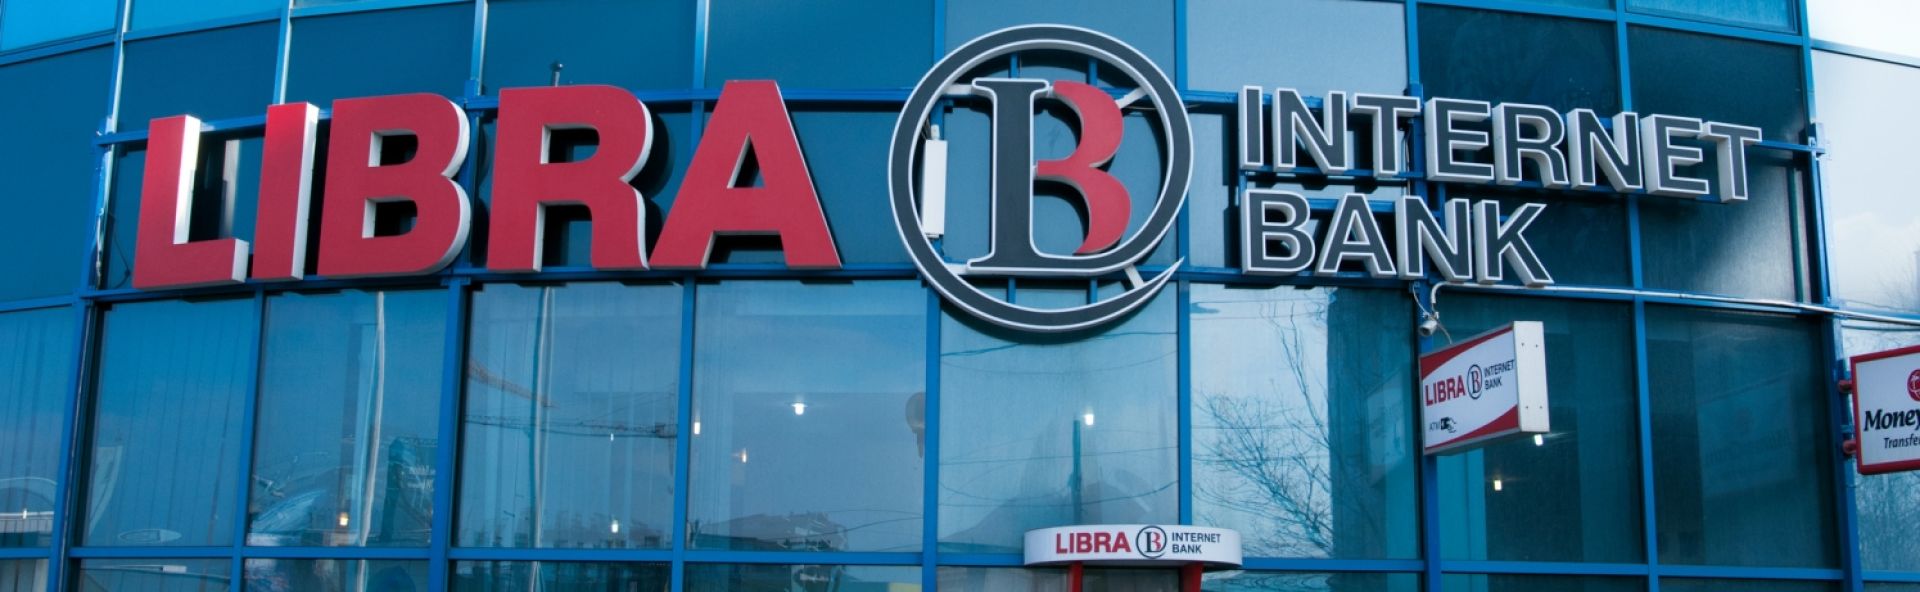 Libra Internet Bank va lansa o nouă emisiune de obligațiuni